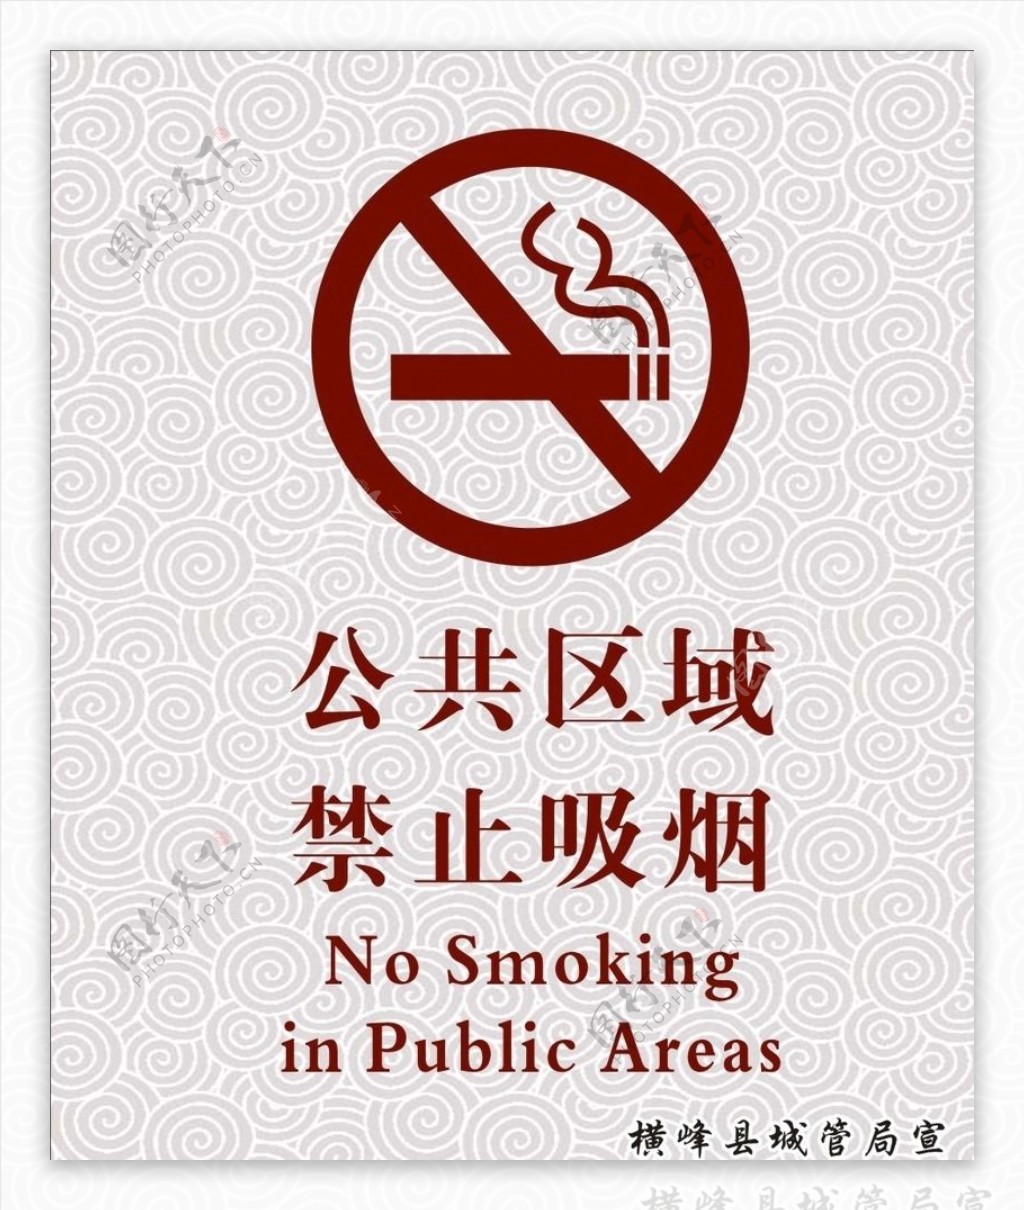 公共区域禁止吸烟